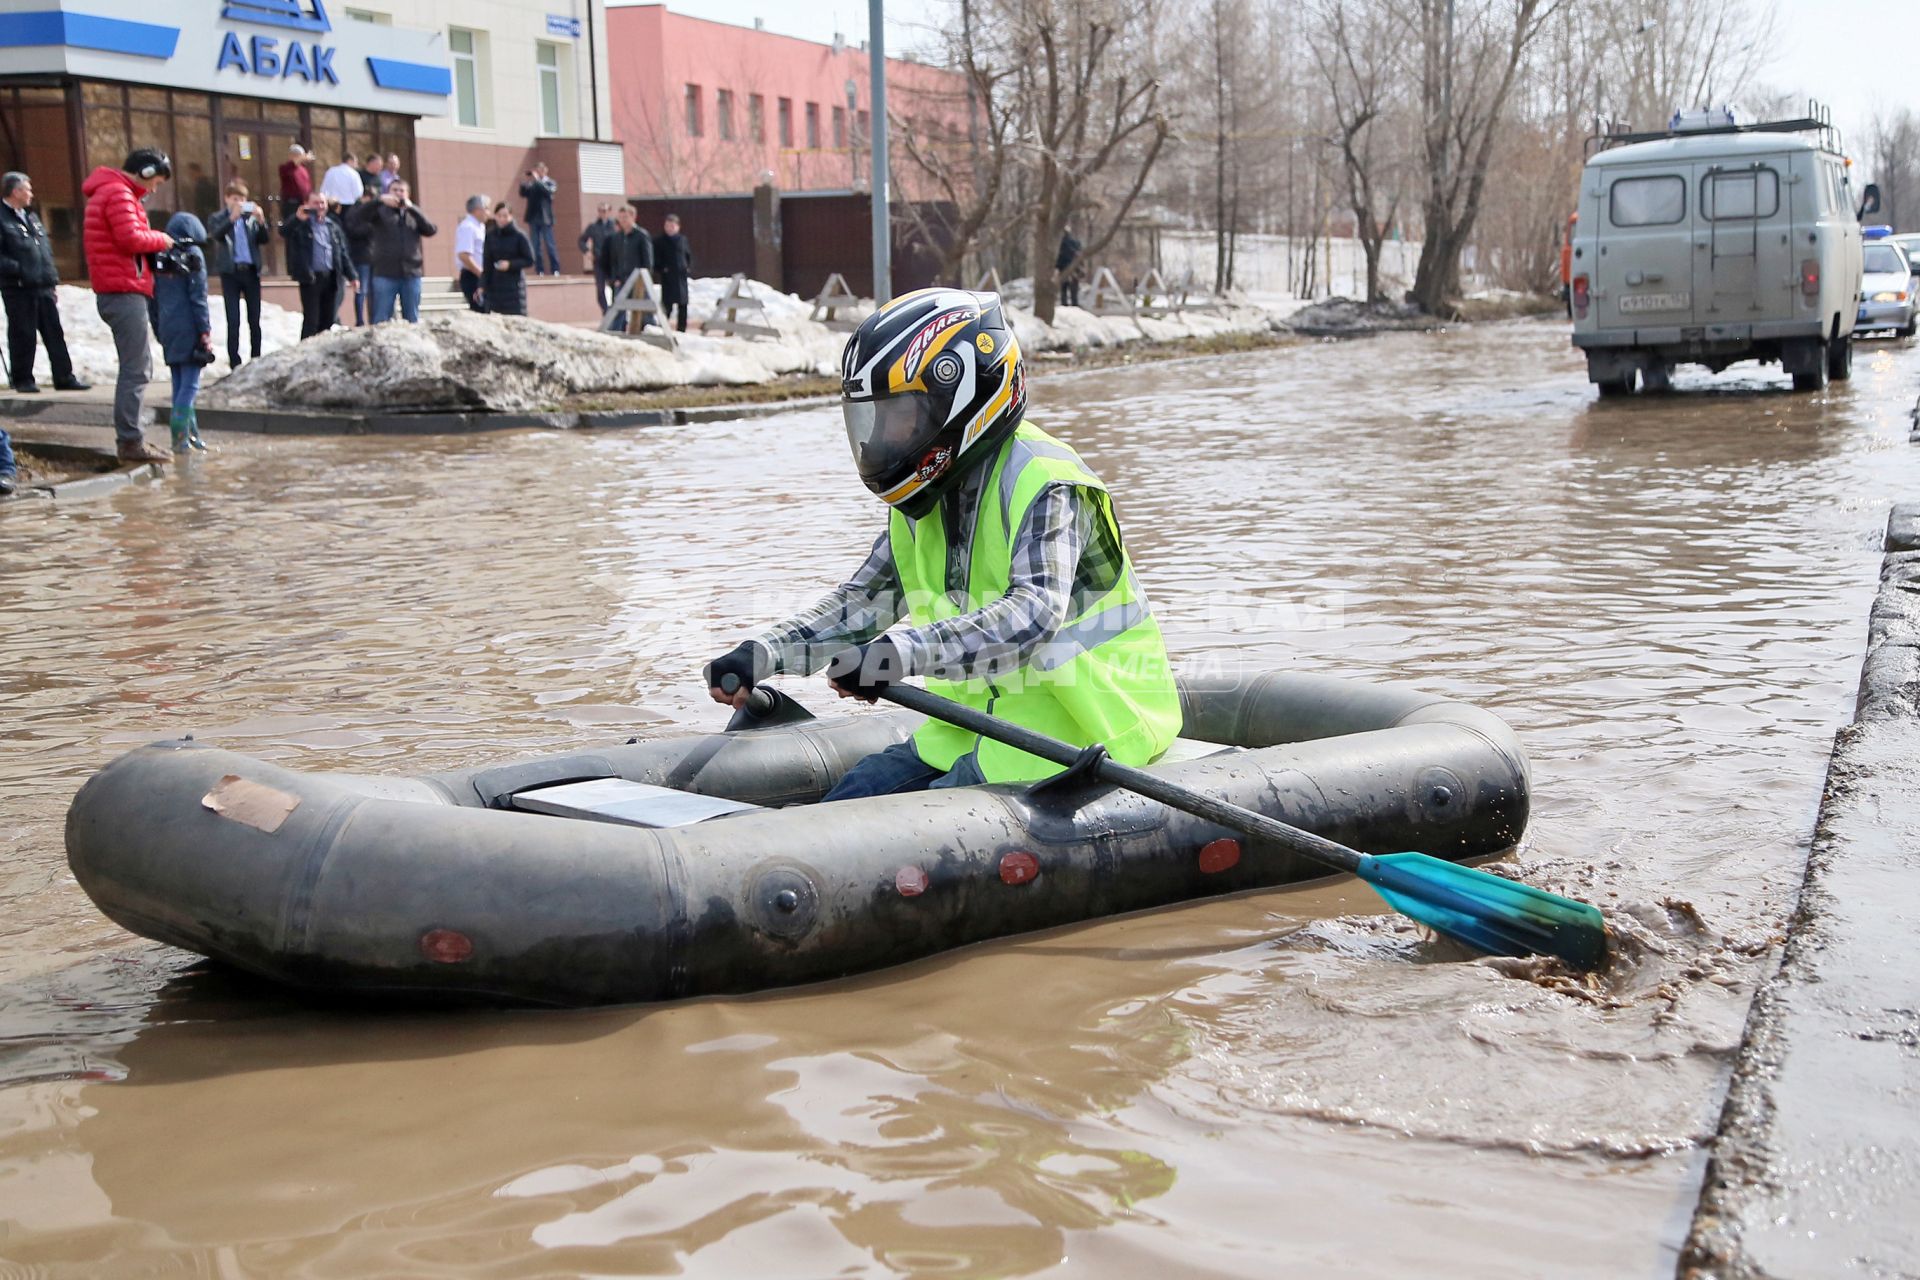 Из-за быстрого таяния снегов весенние паводковые воды затопили проезжую часть на улицах Казани. На снимке: мужчина в мотоциклетном шлеме на резиновой лодке плывет по затопленной улице города.